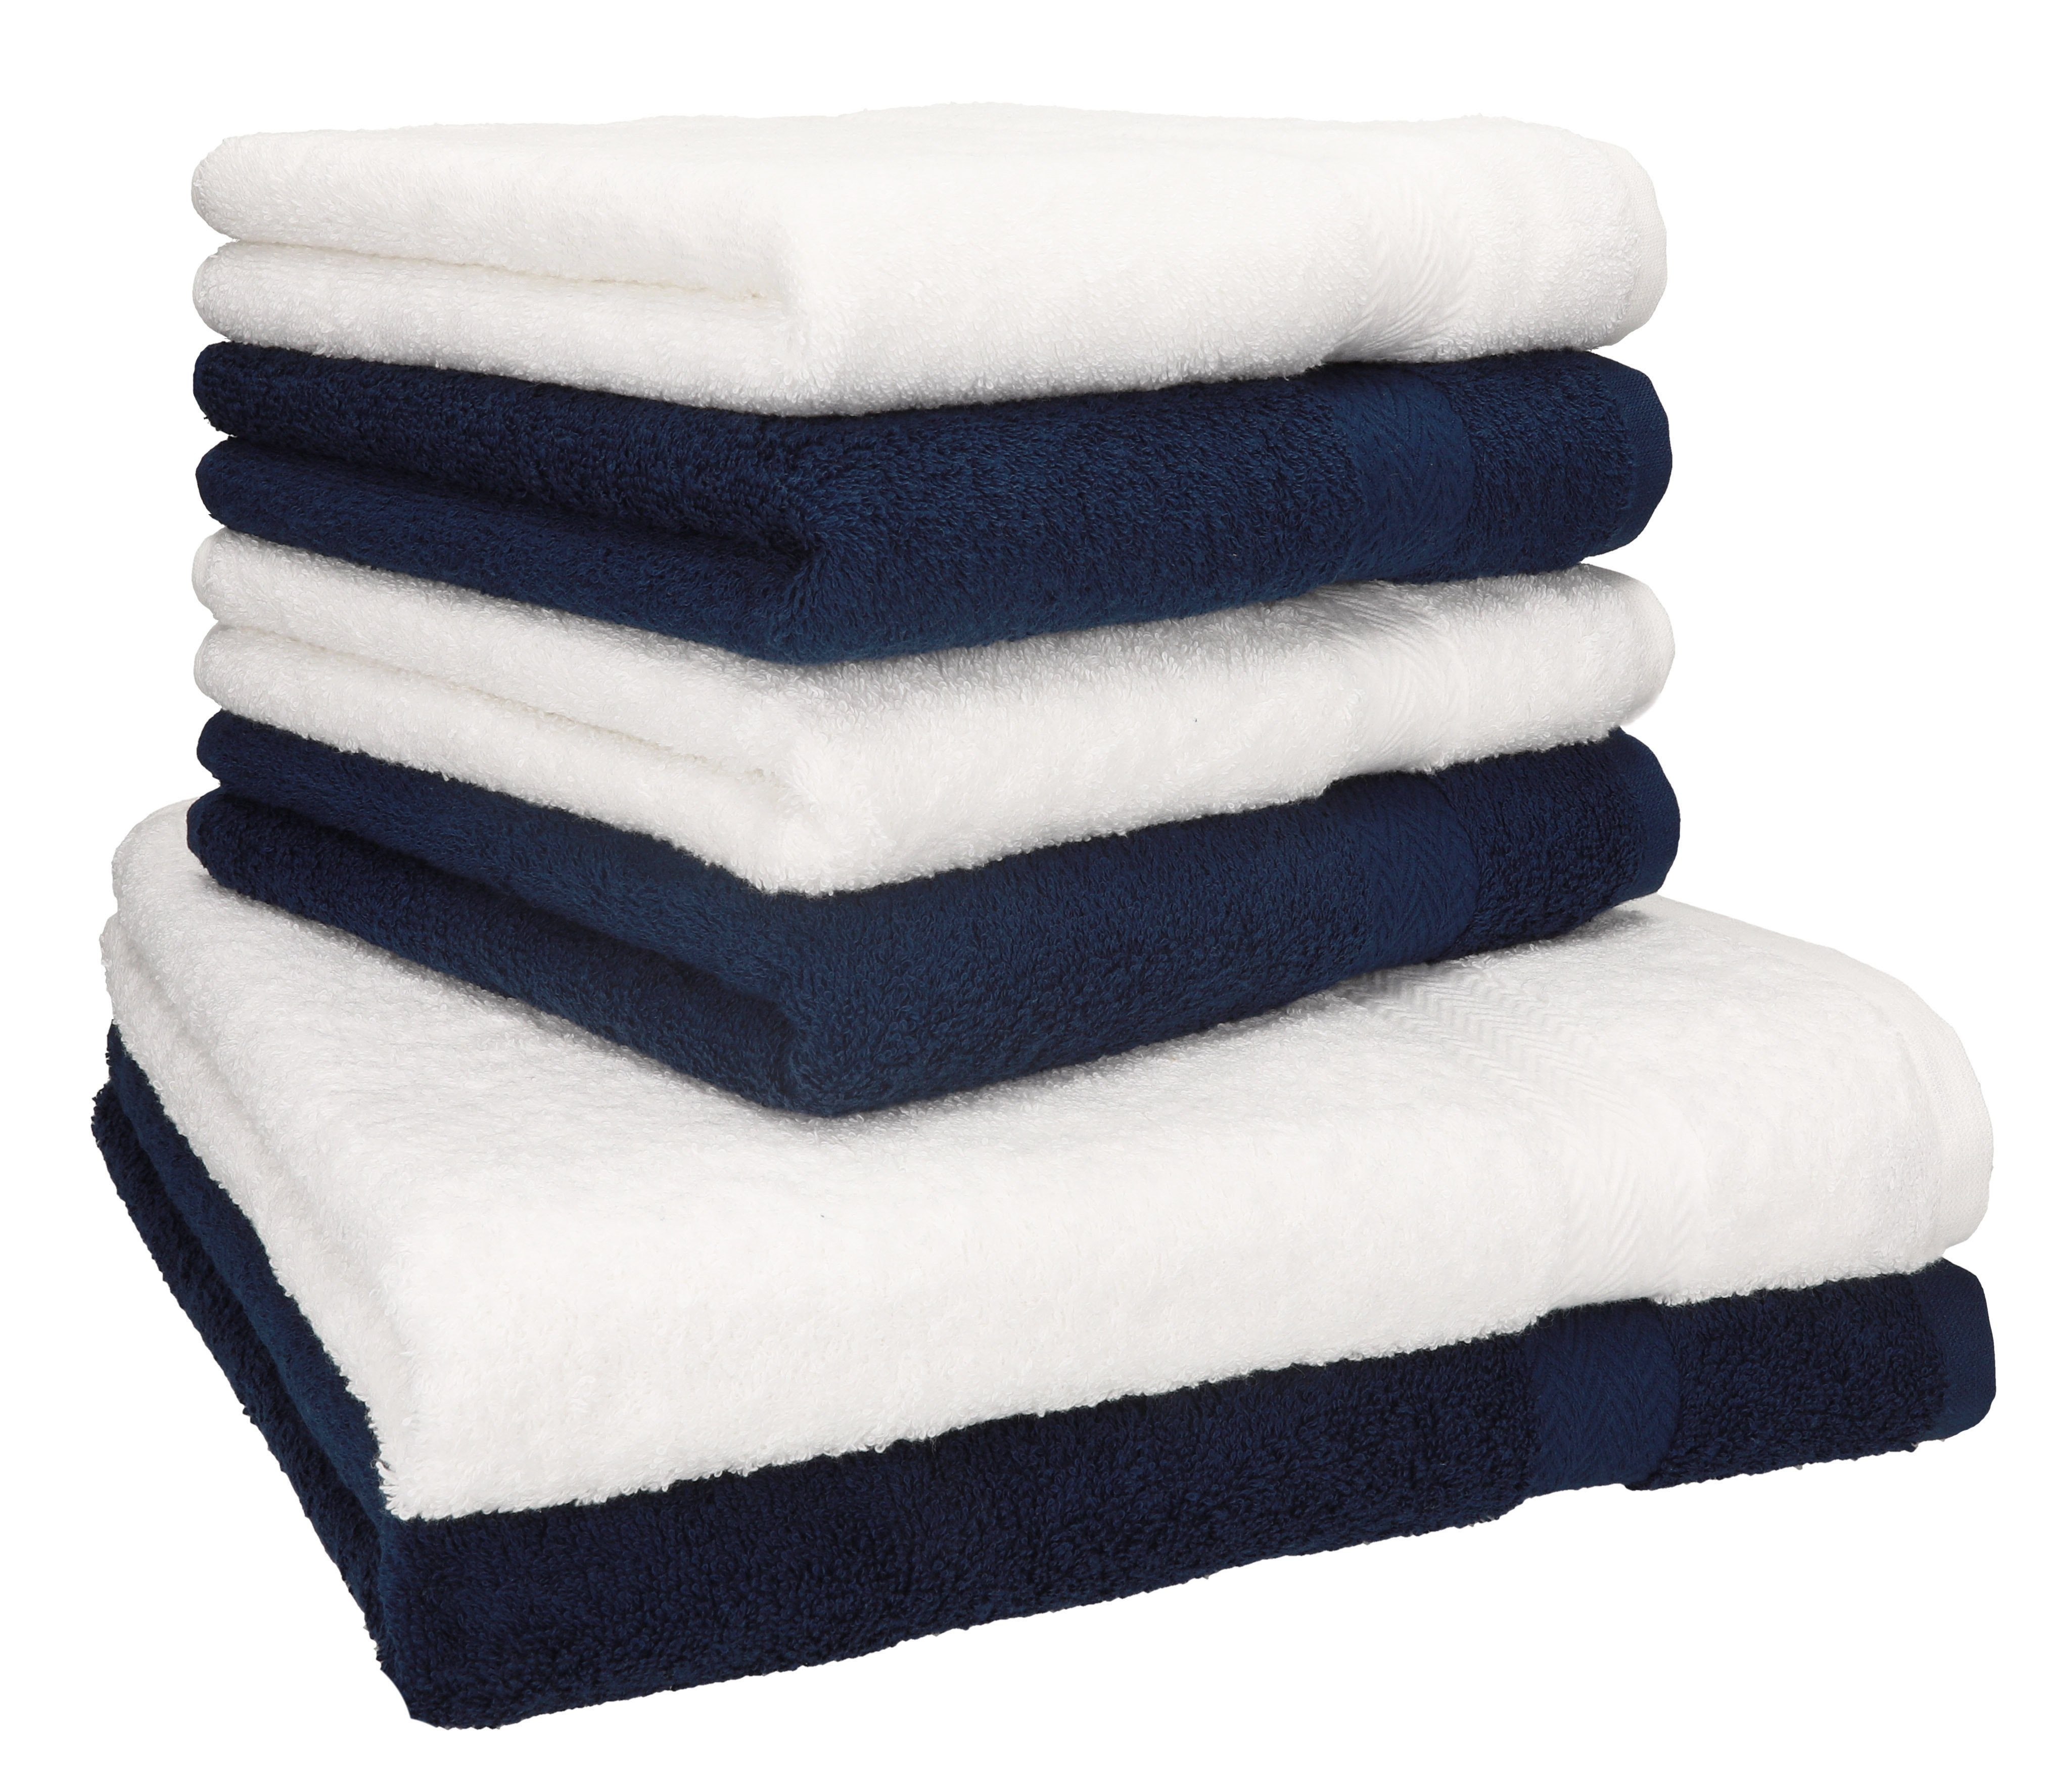 Betz Handtuch Set 6-TLG. Handtuch-Set Premium Farbe dunkelblau und weiß, 100% Baumwolle